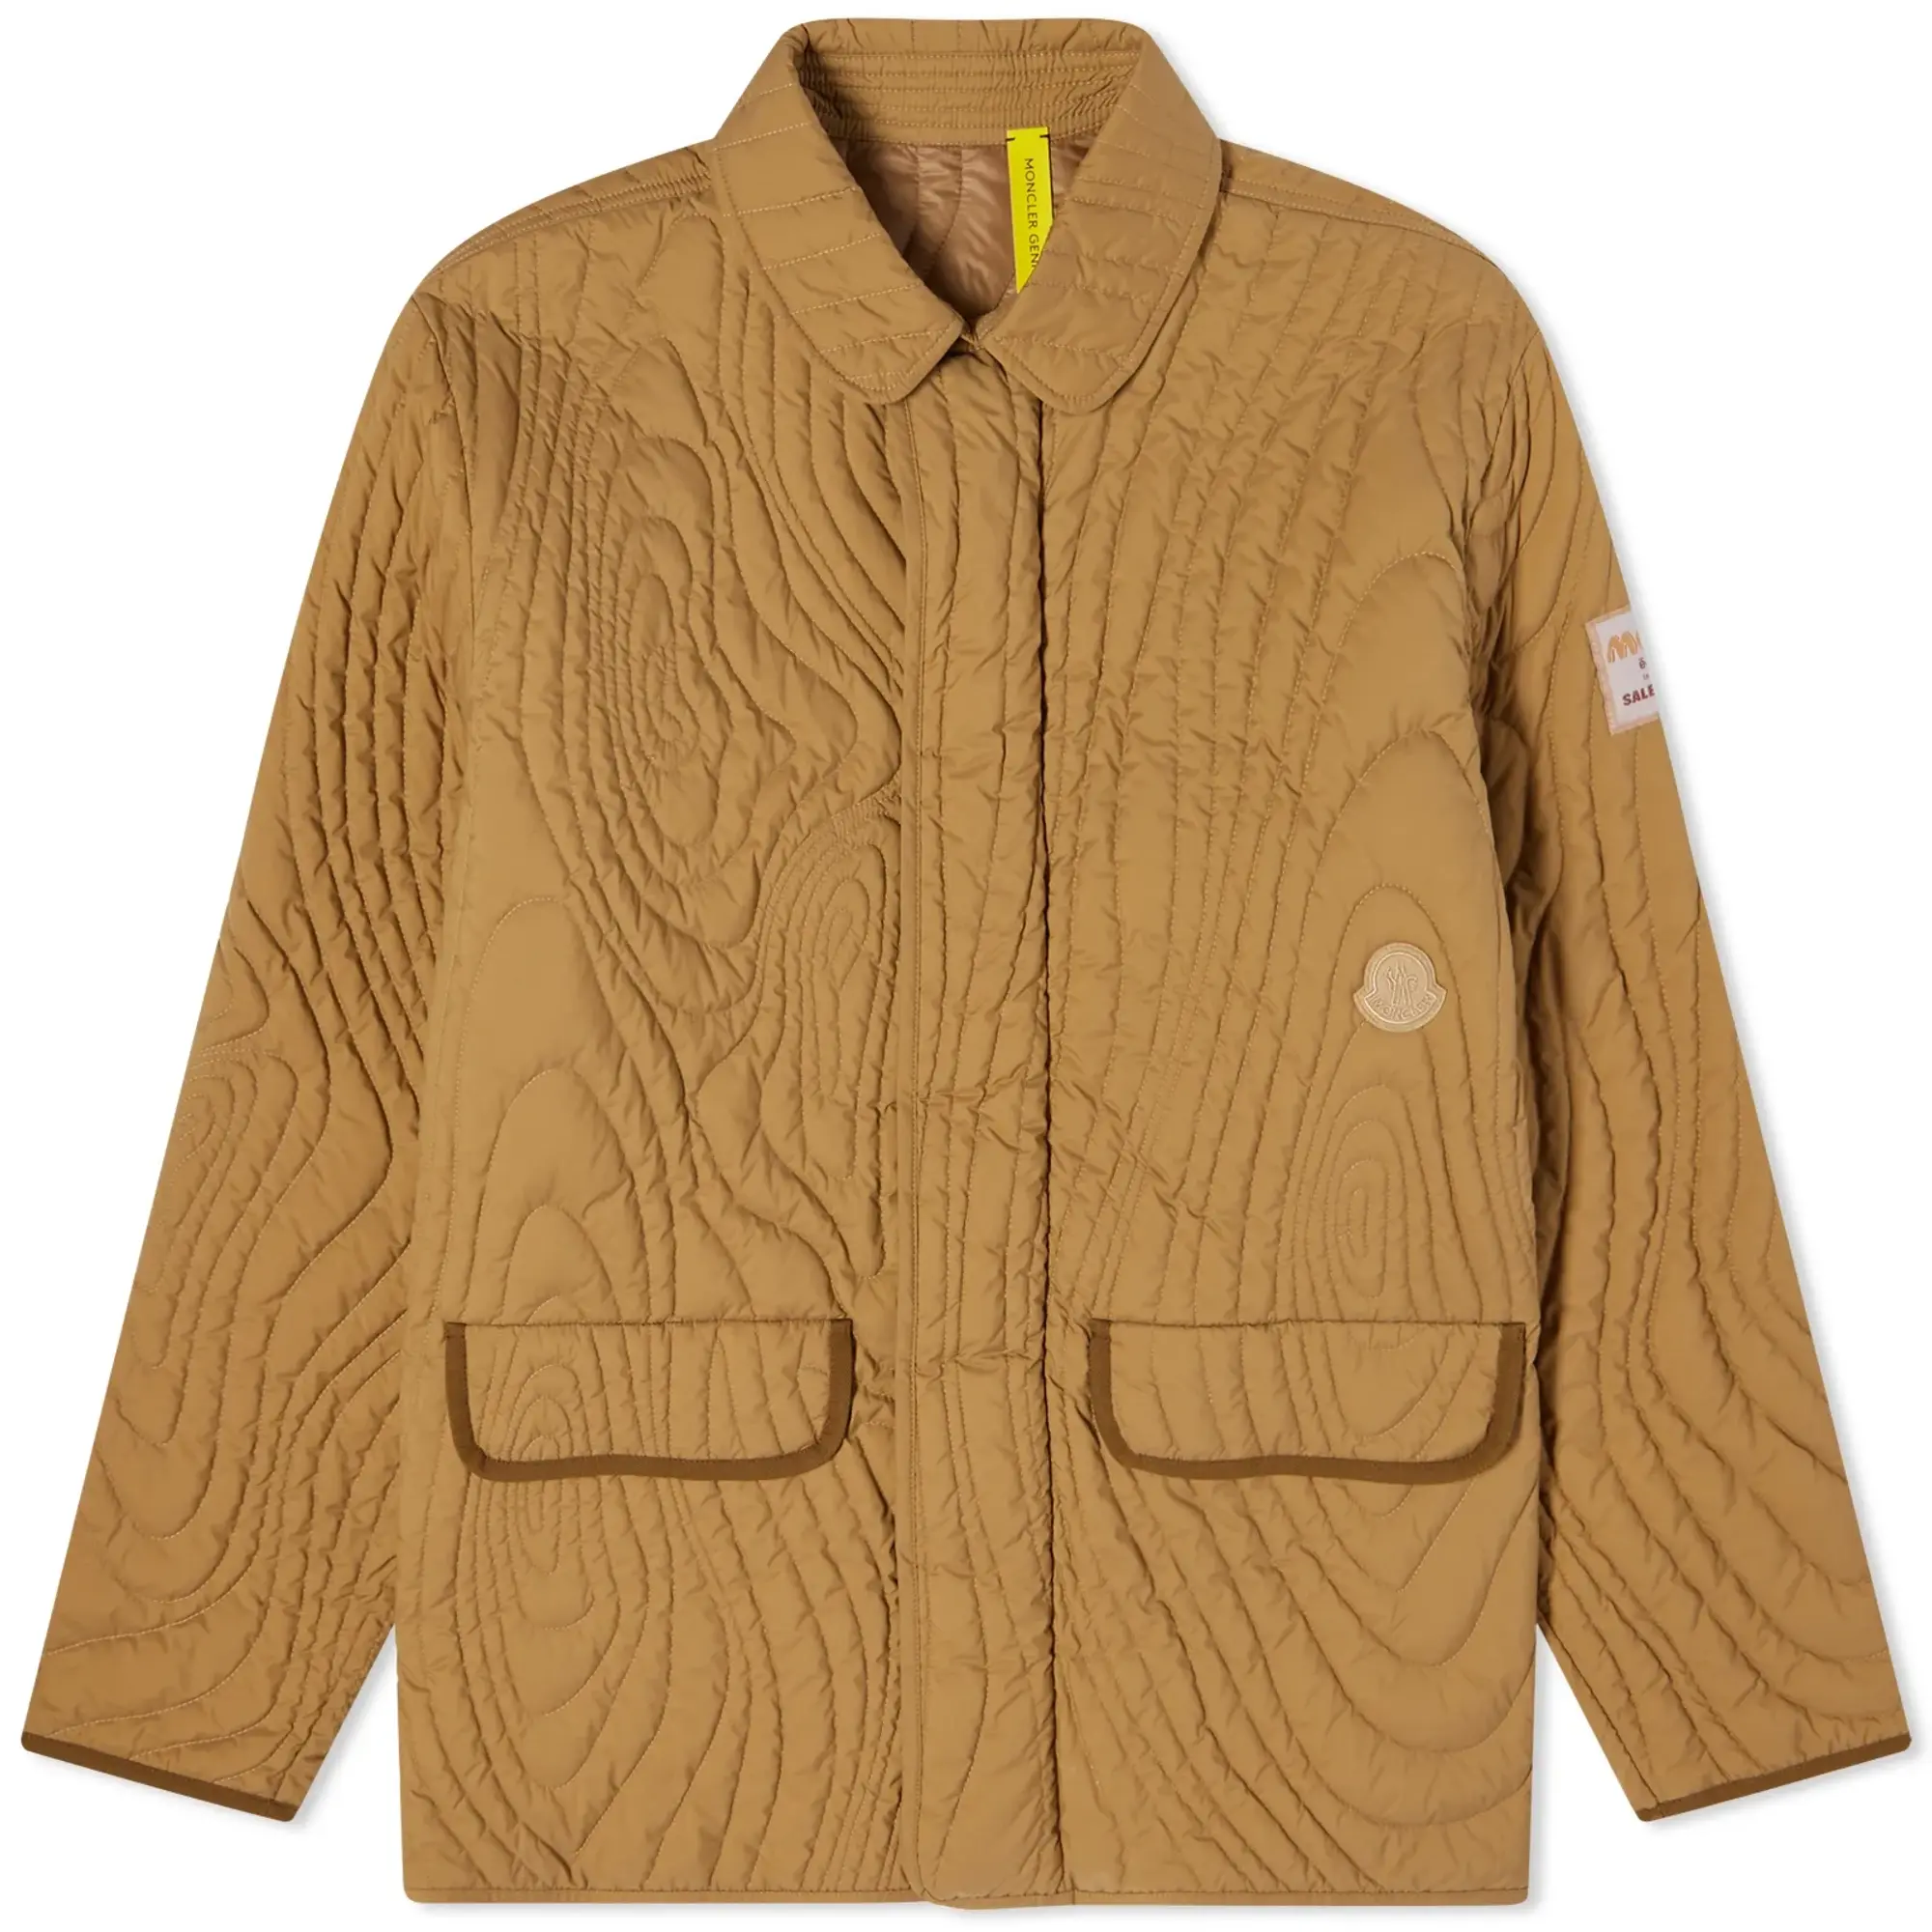 Moncler Genius x Salehe Bembury Harter-Heighway Jacket Rust